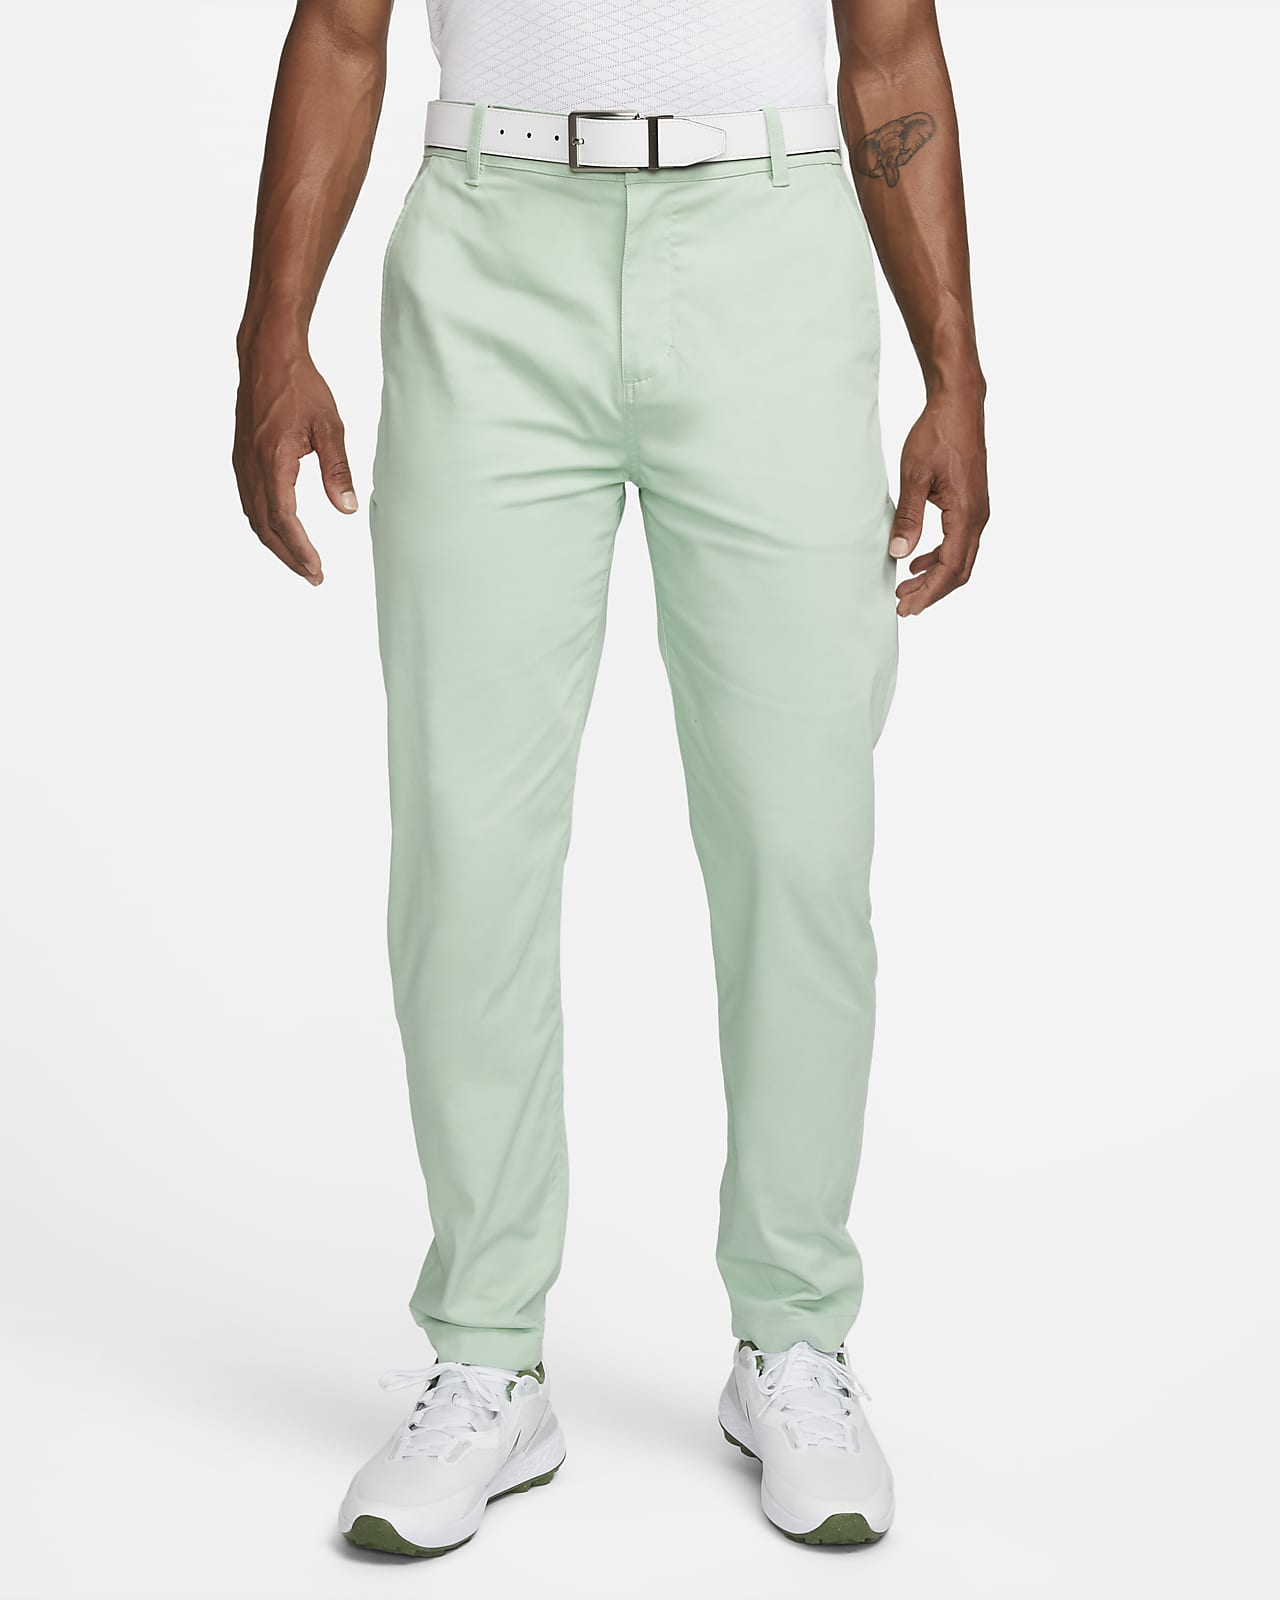 Nike Dri-FIT UV Men's Standard Fit Golf Chino Pants